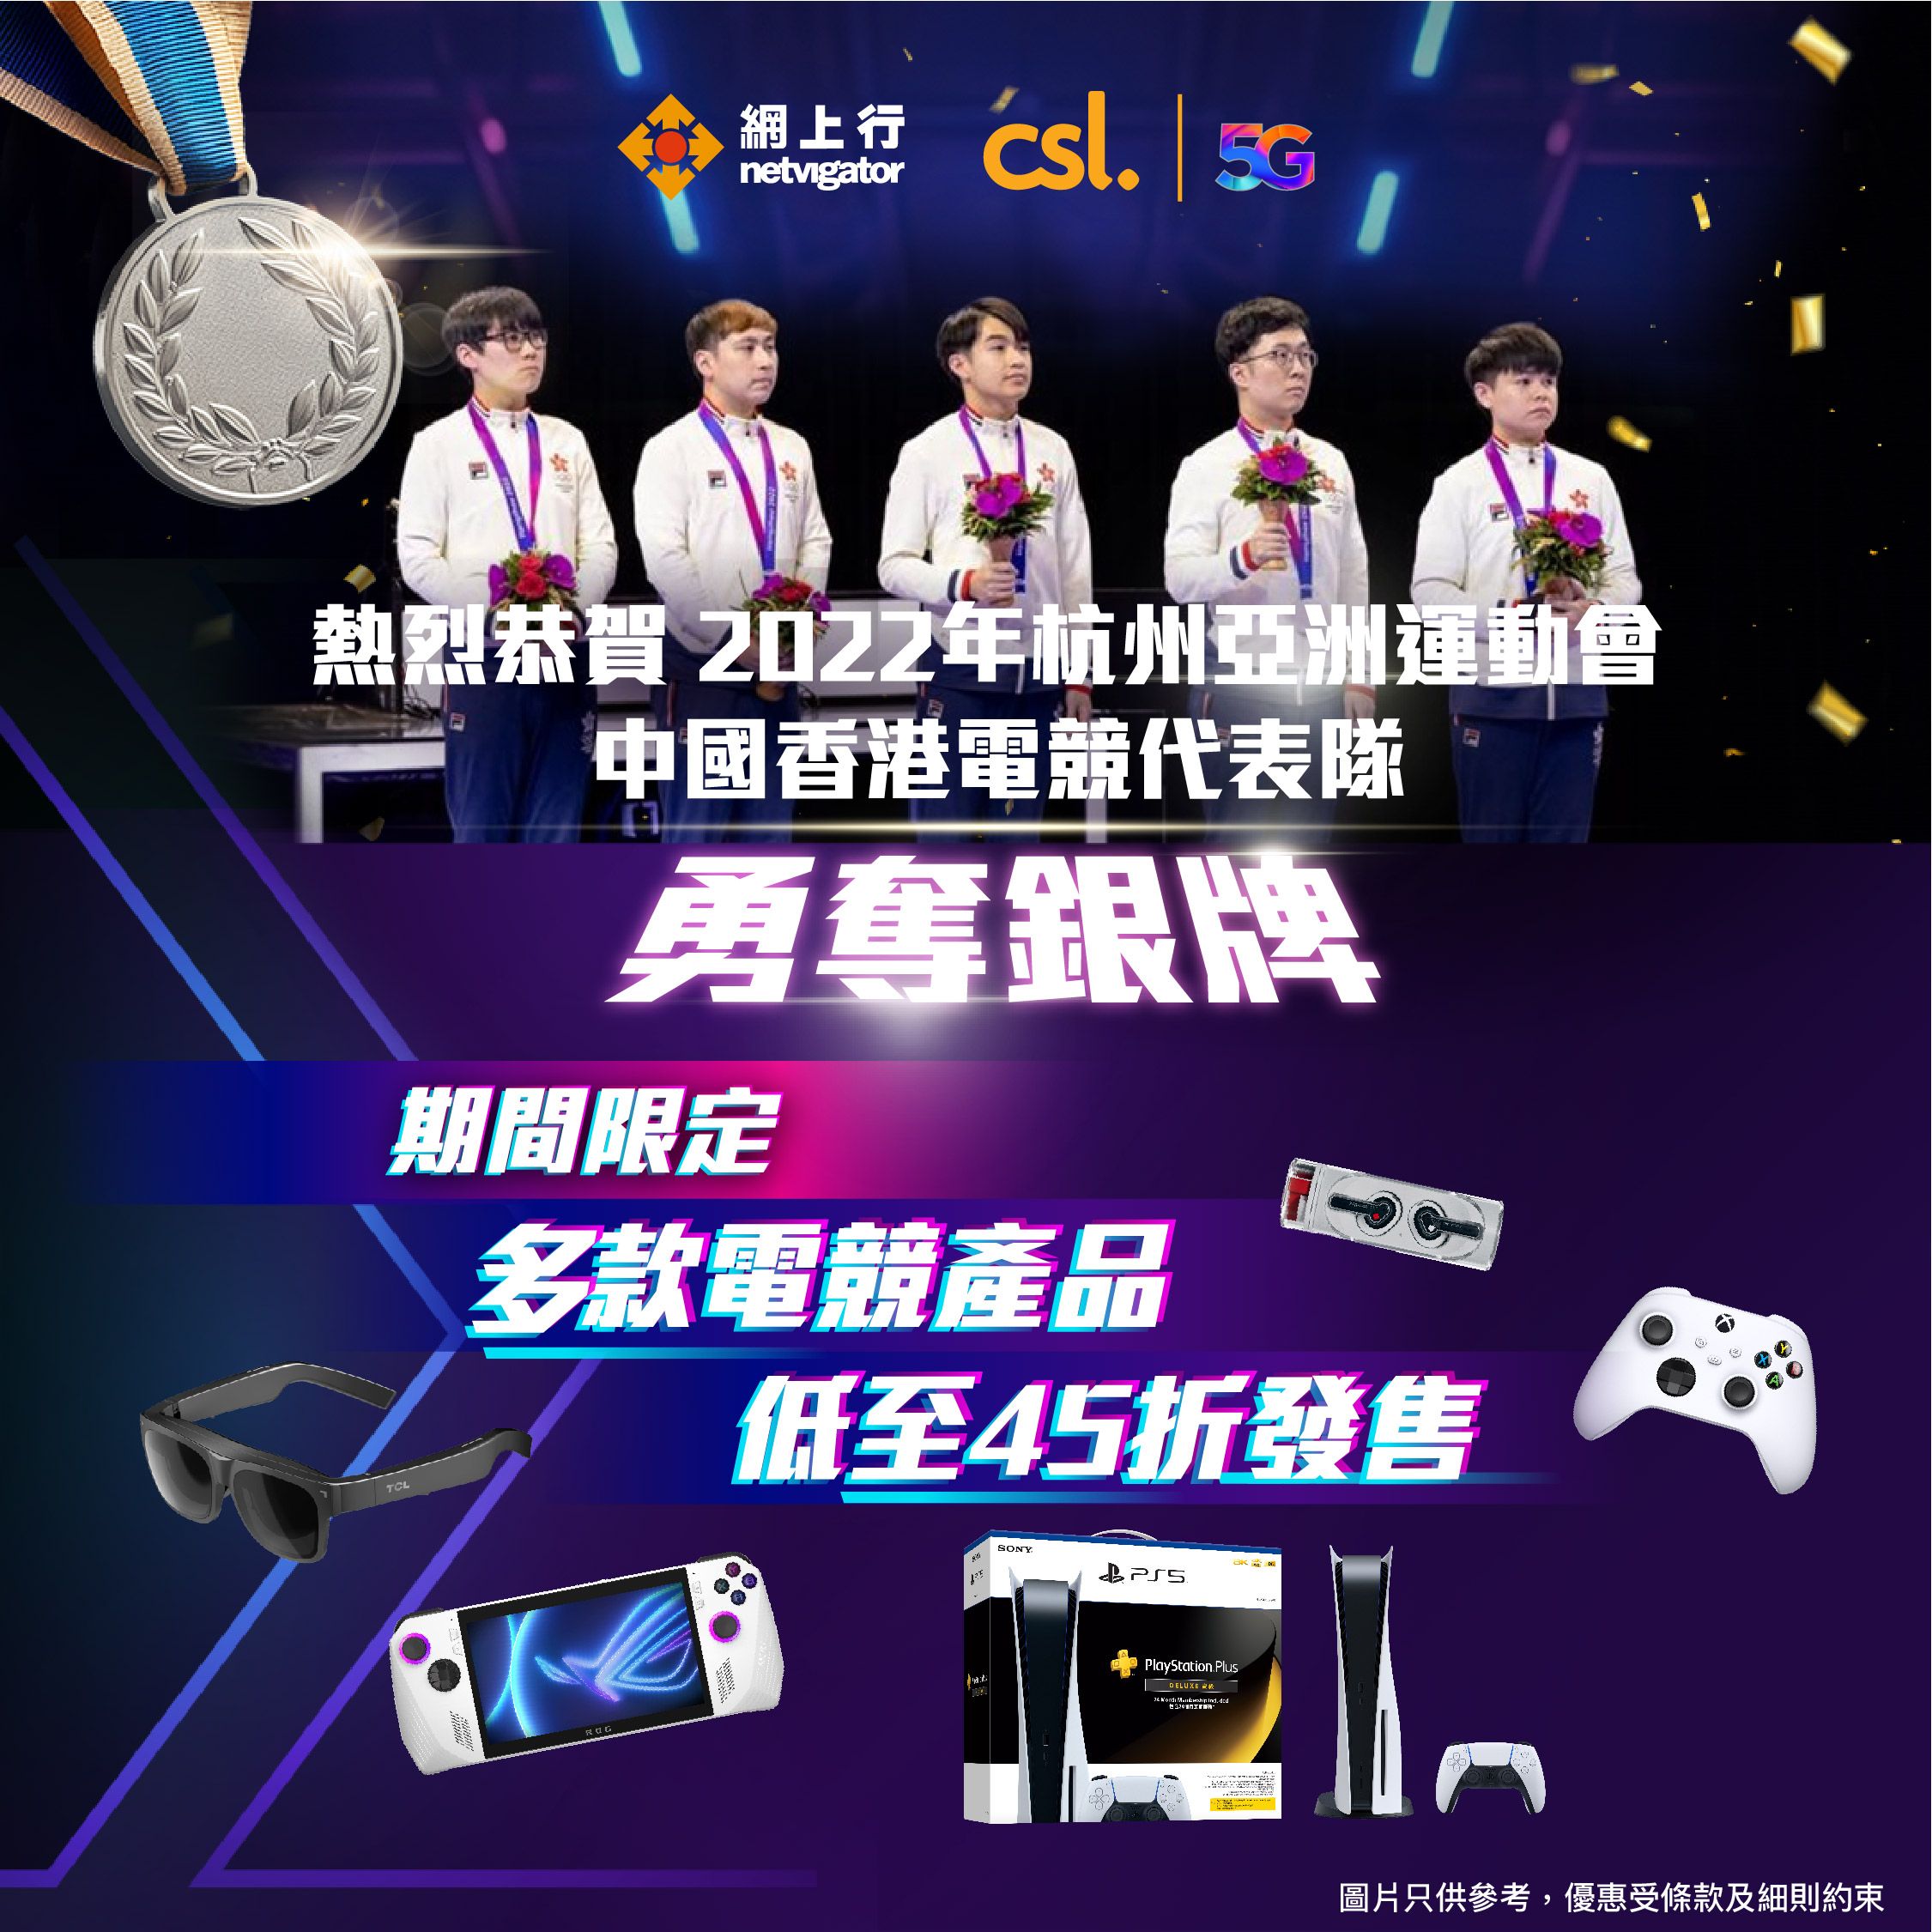 網上行熱烈恭賀2022年杭州亞洲運動會中國香港電競代表隊勇奪銀牌